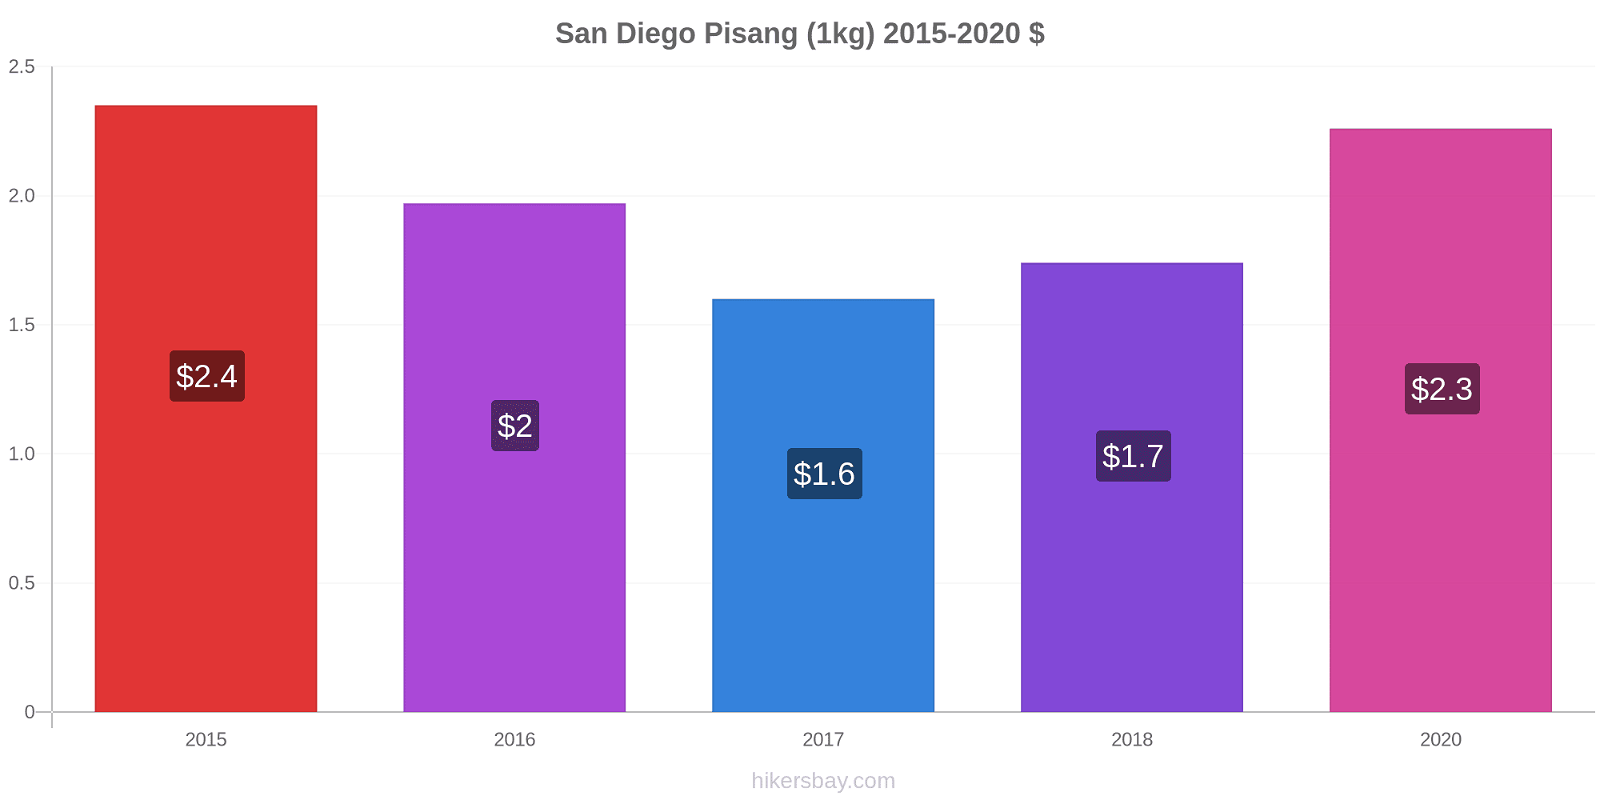 San Diego perubahan harga Pisang (1kg) hikersbay.com